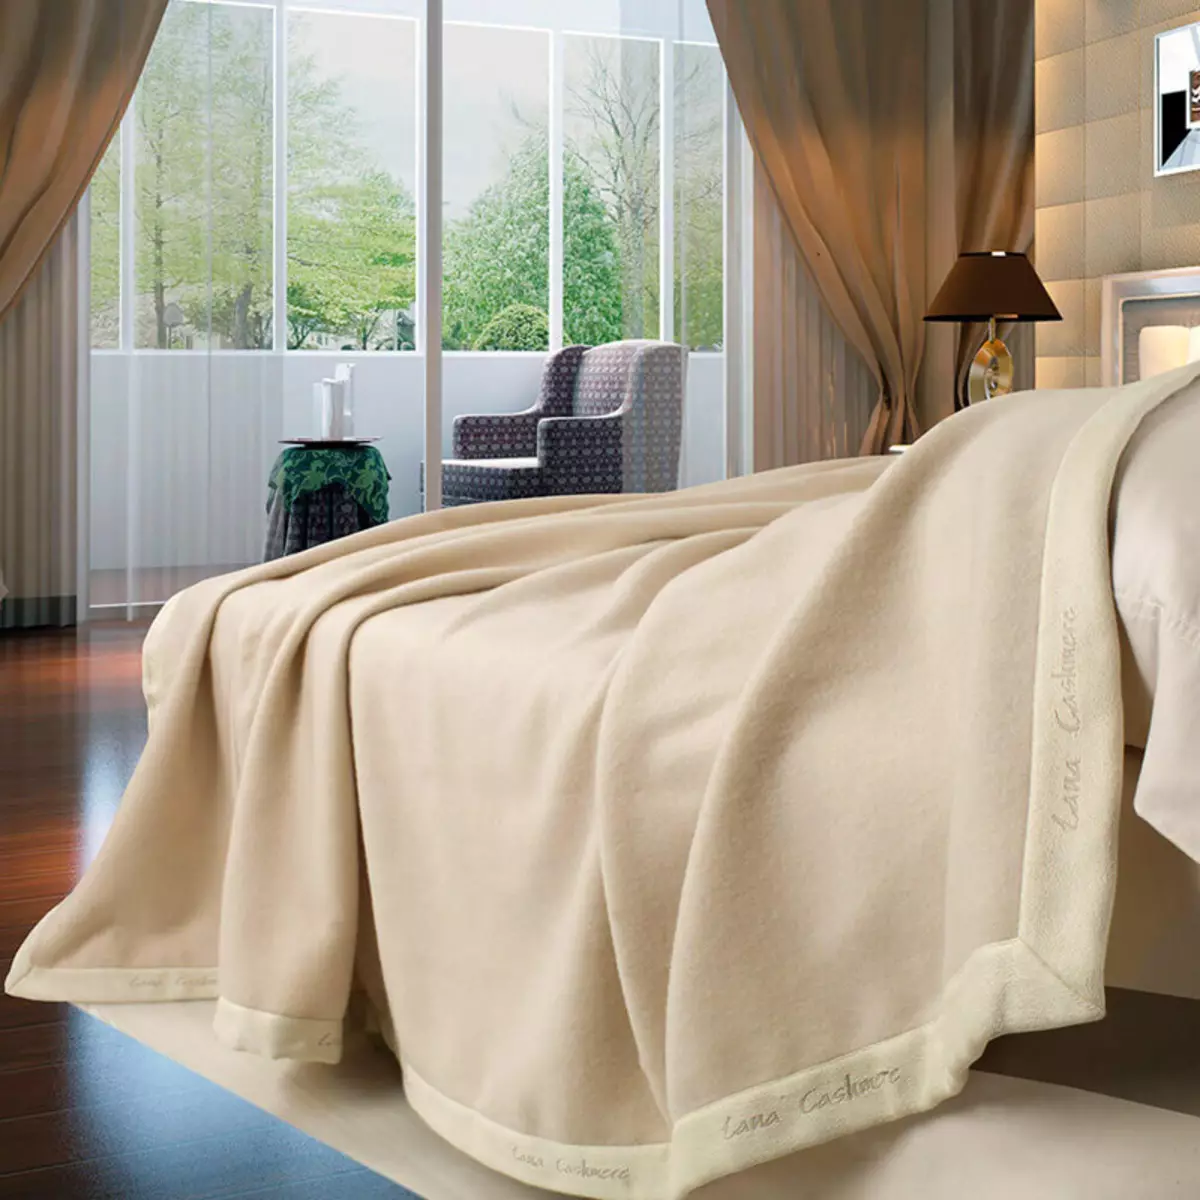 ผ้าห่มอุ่น: วิธีการเลือกผ้าคลุมเตียงที่สะดวกสบายบนเตียง? ผ้าห่มที่อบอุ่นวัสดุและการออกแบบขนาดและเคล็ดลับการดูแล 24937_18